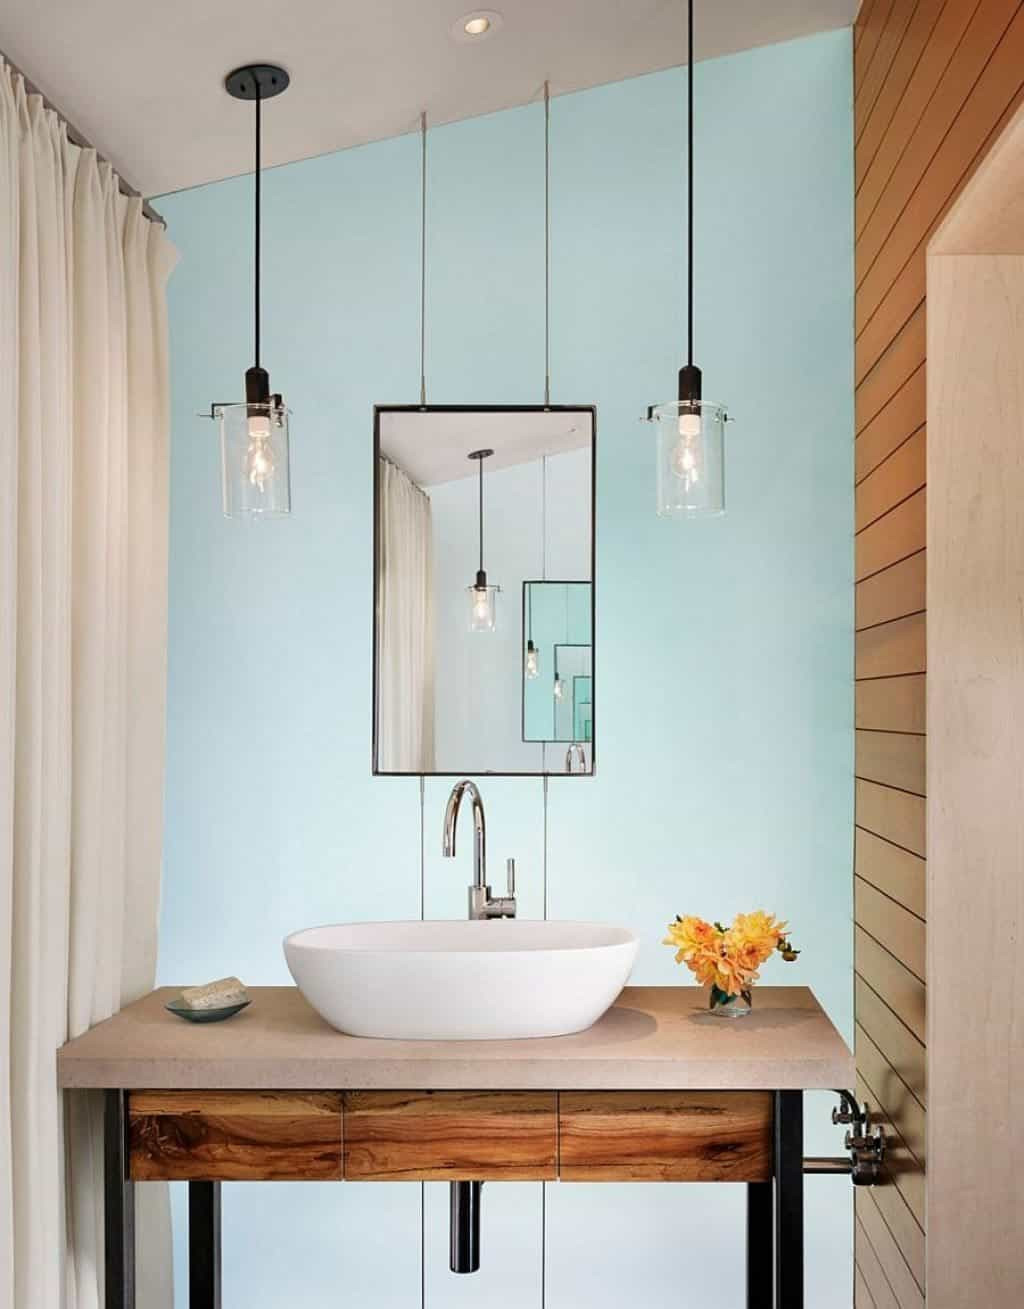 Bathroom Over Vanity Lighting
 Bathroom Using Hanging Glass Pendants Over Vanity With